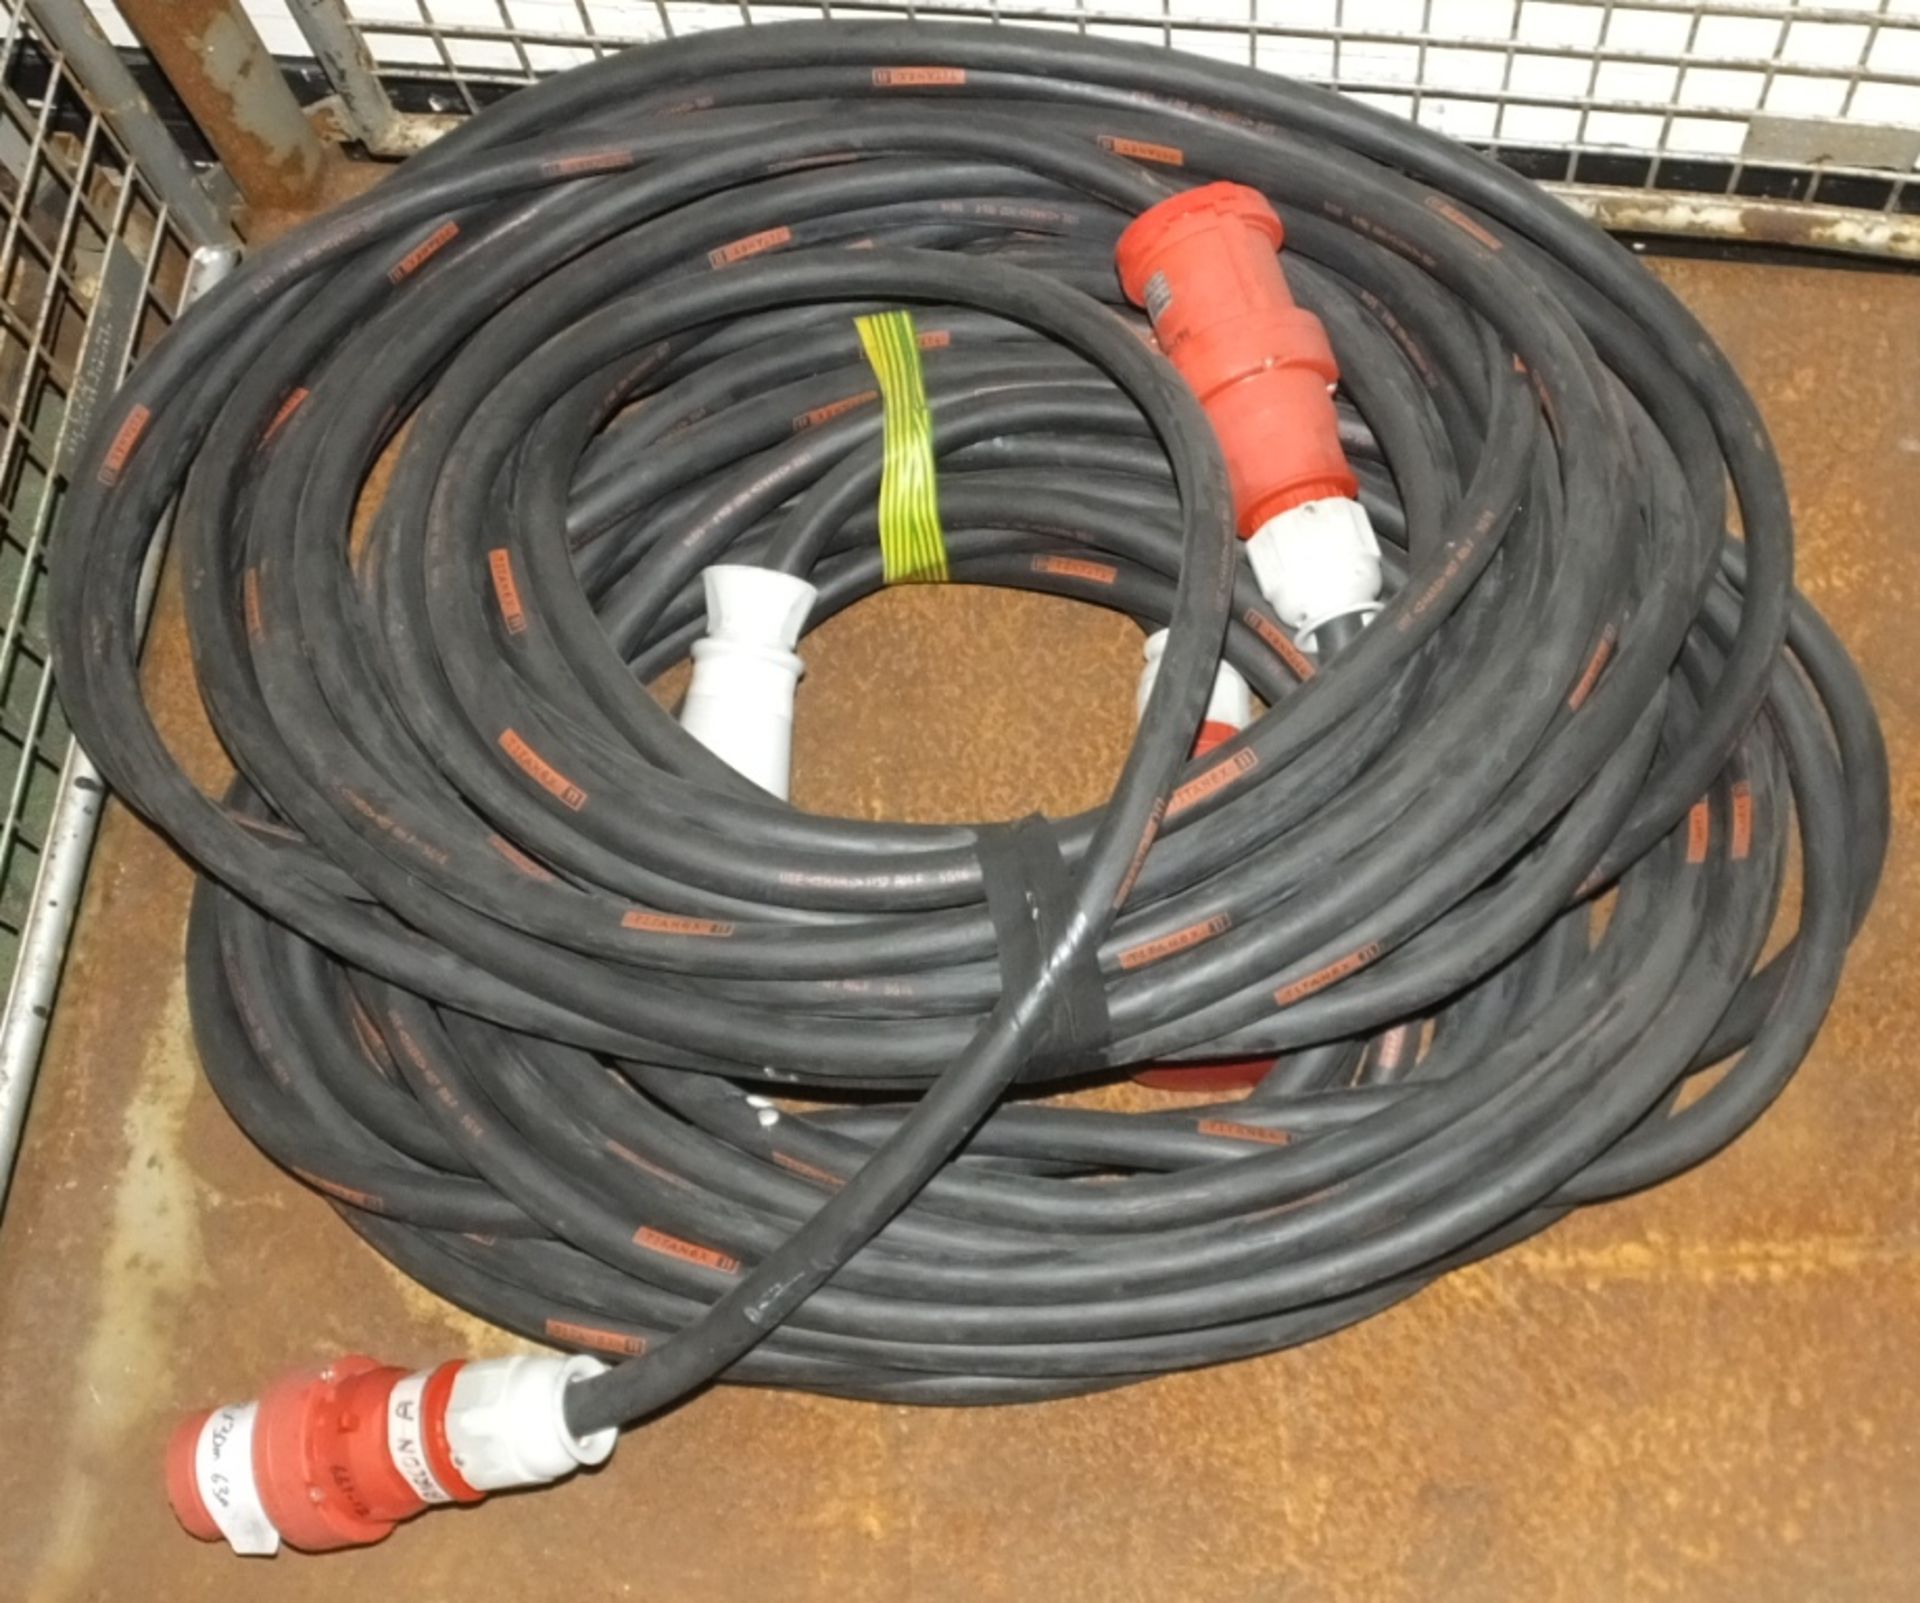 2x Cable Assemblies Black - 30M x 63A